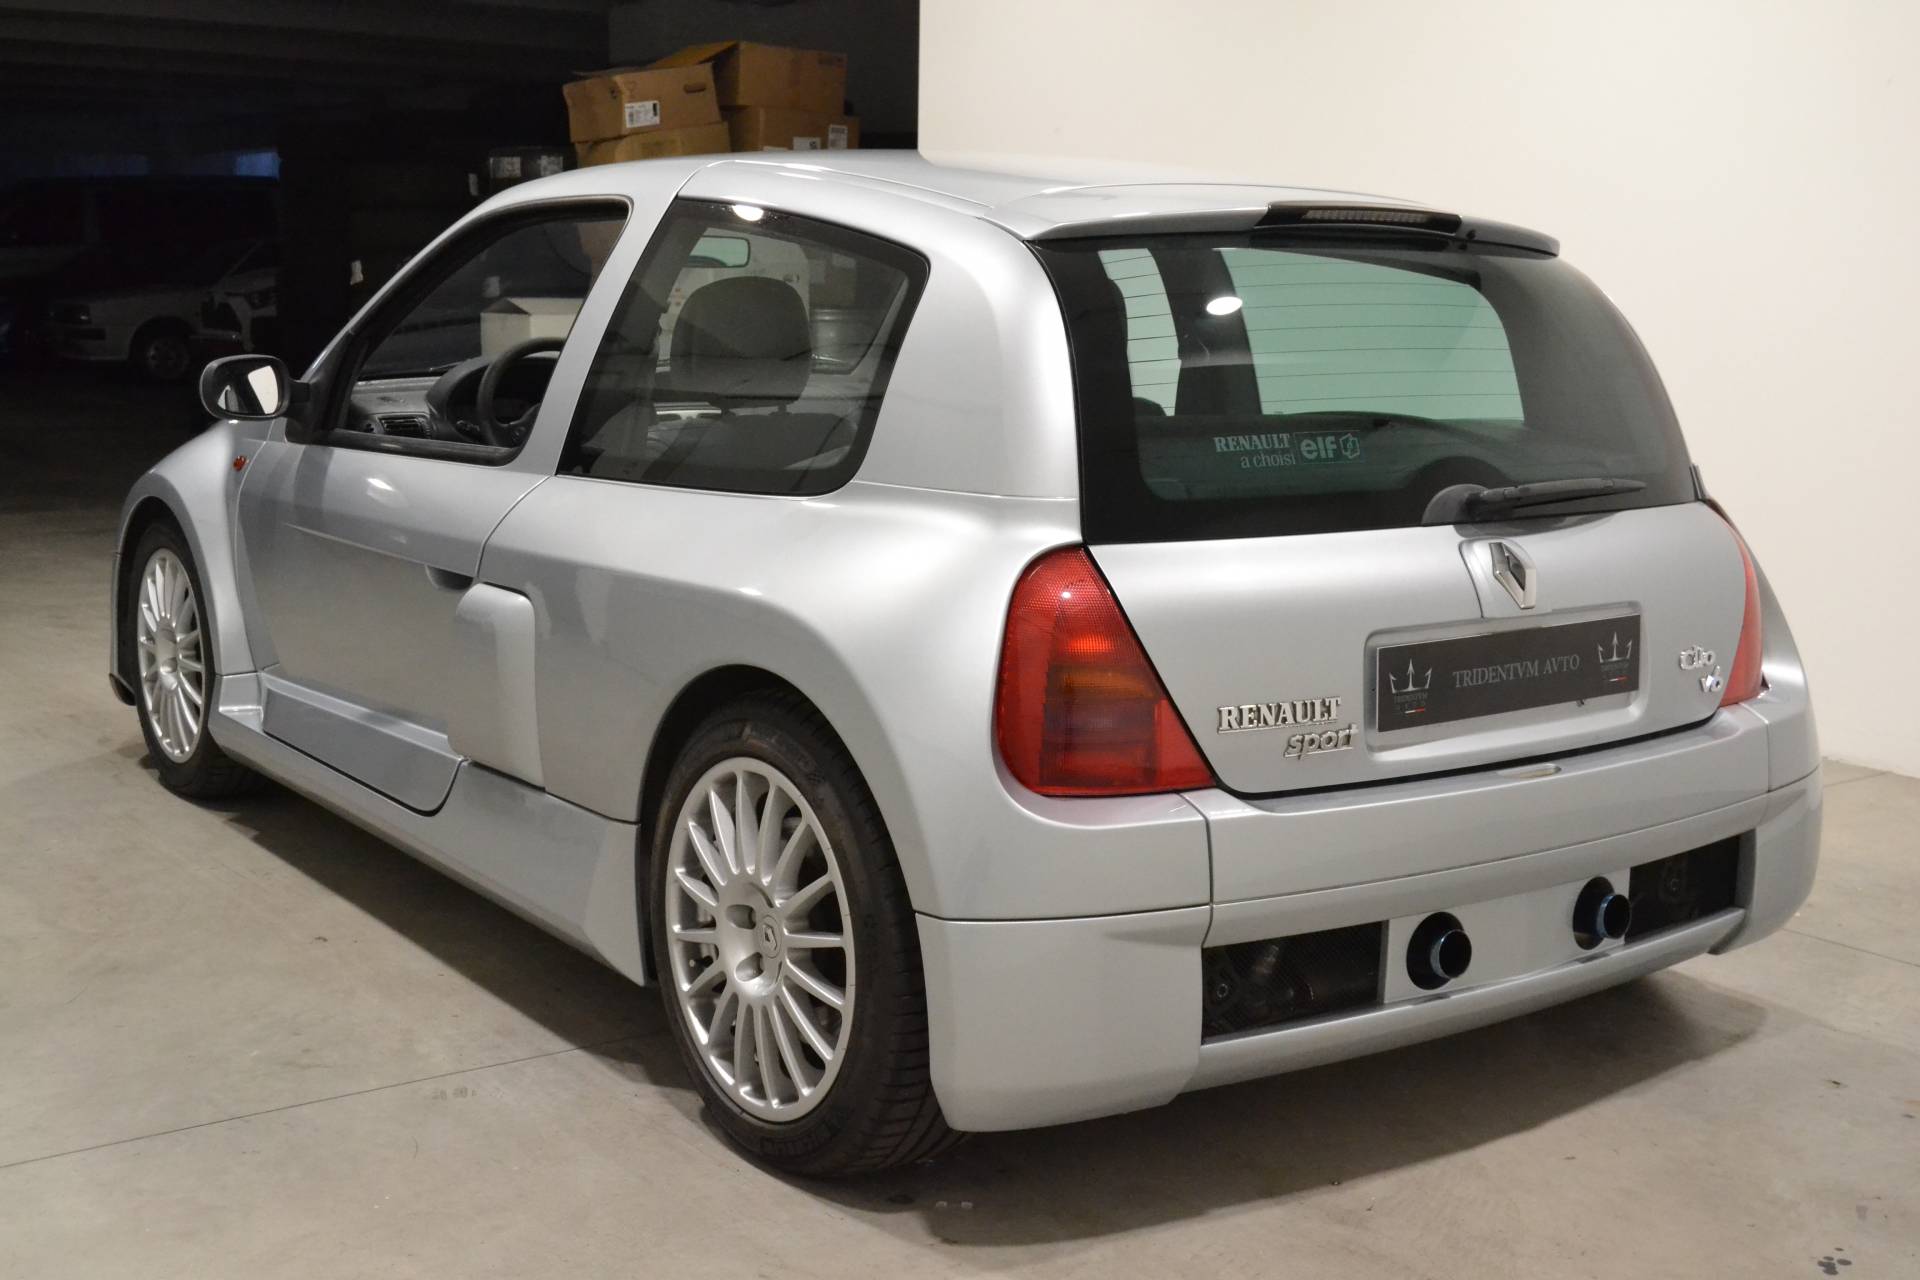 Meenemen moord Eigenlijk Te koop: Renault Clio II V6 (2002) aangeboden voor € 57.000